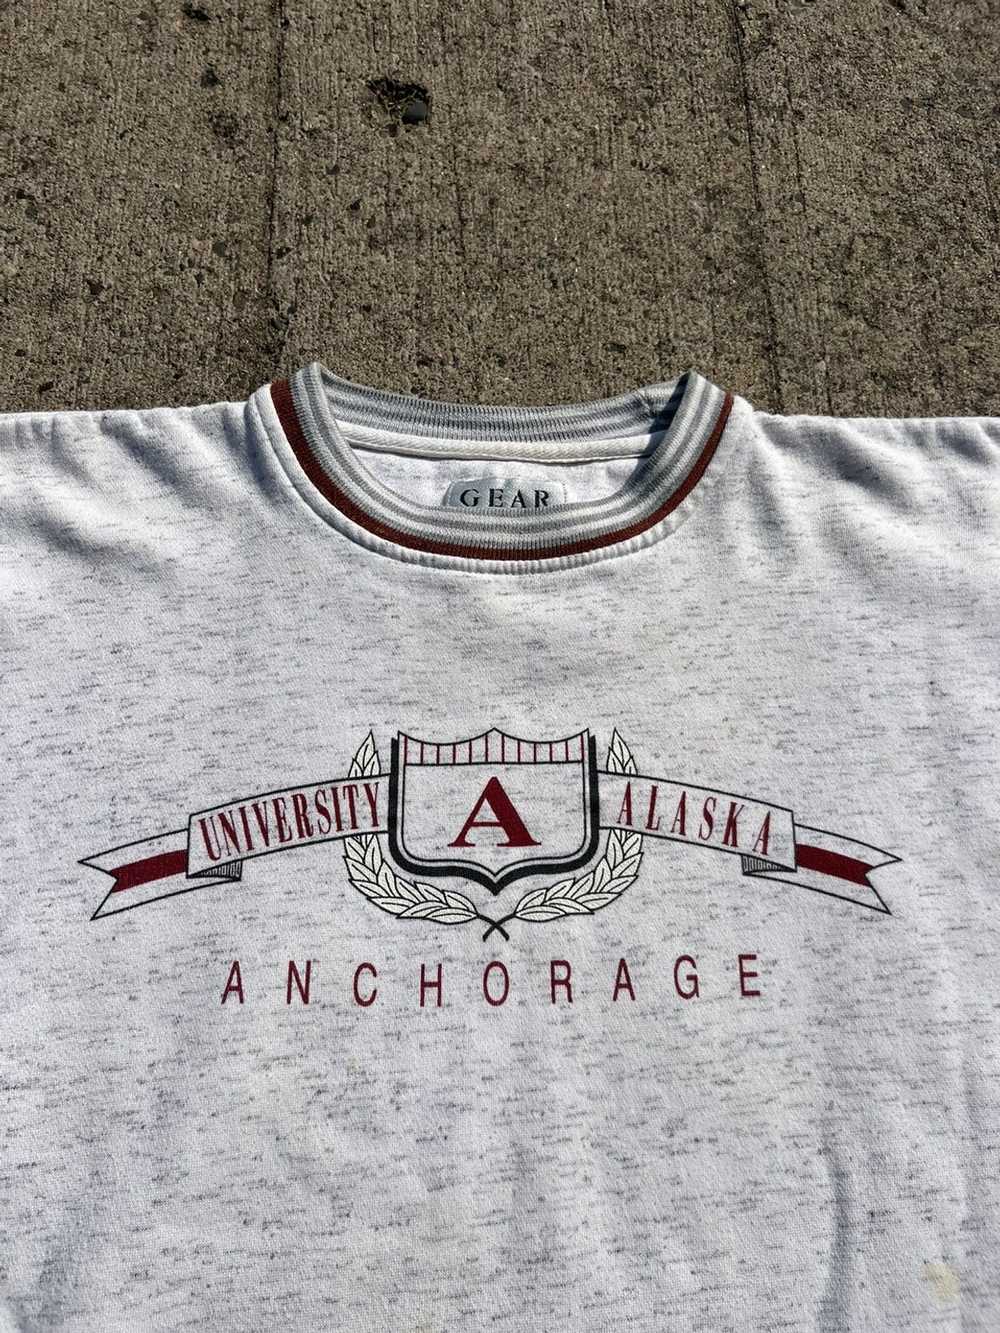 Vintage Vintage University of Alaska Sweatshirt - image 3